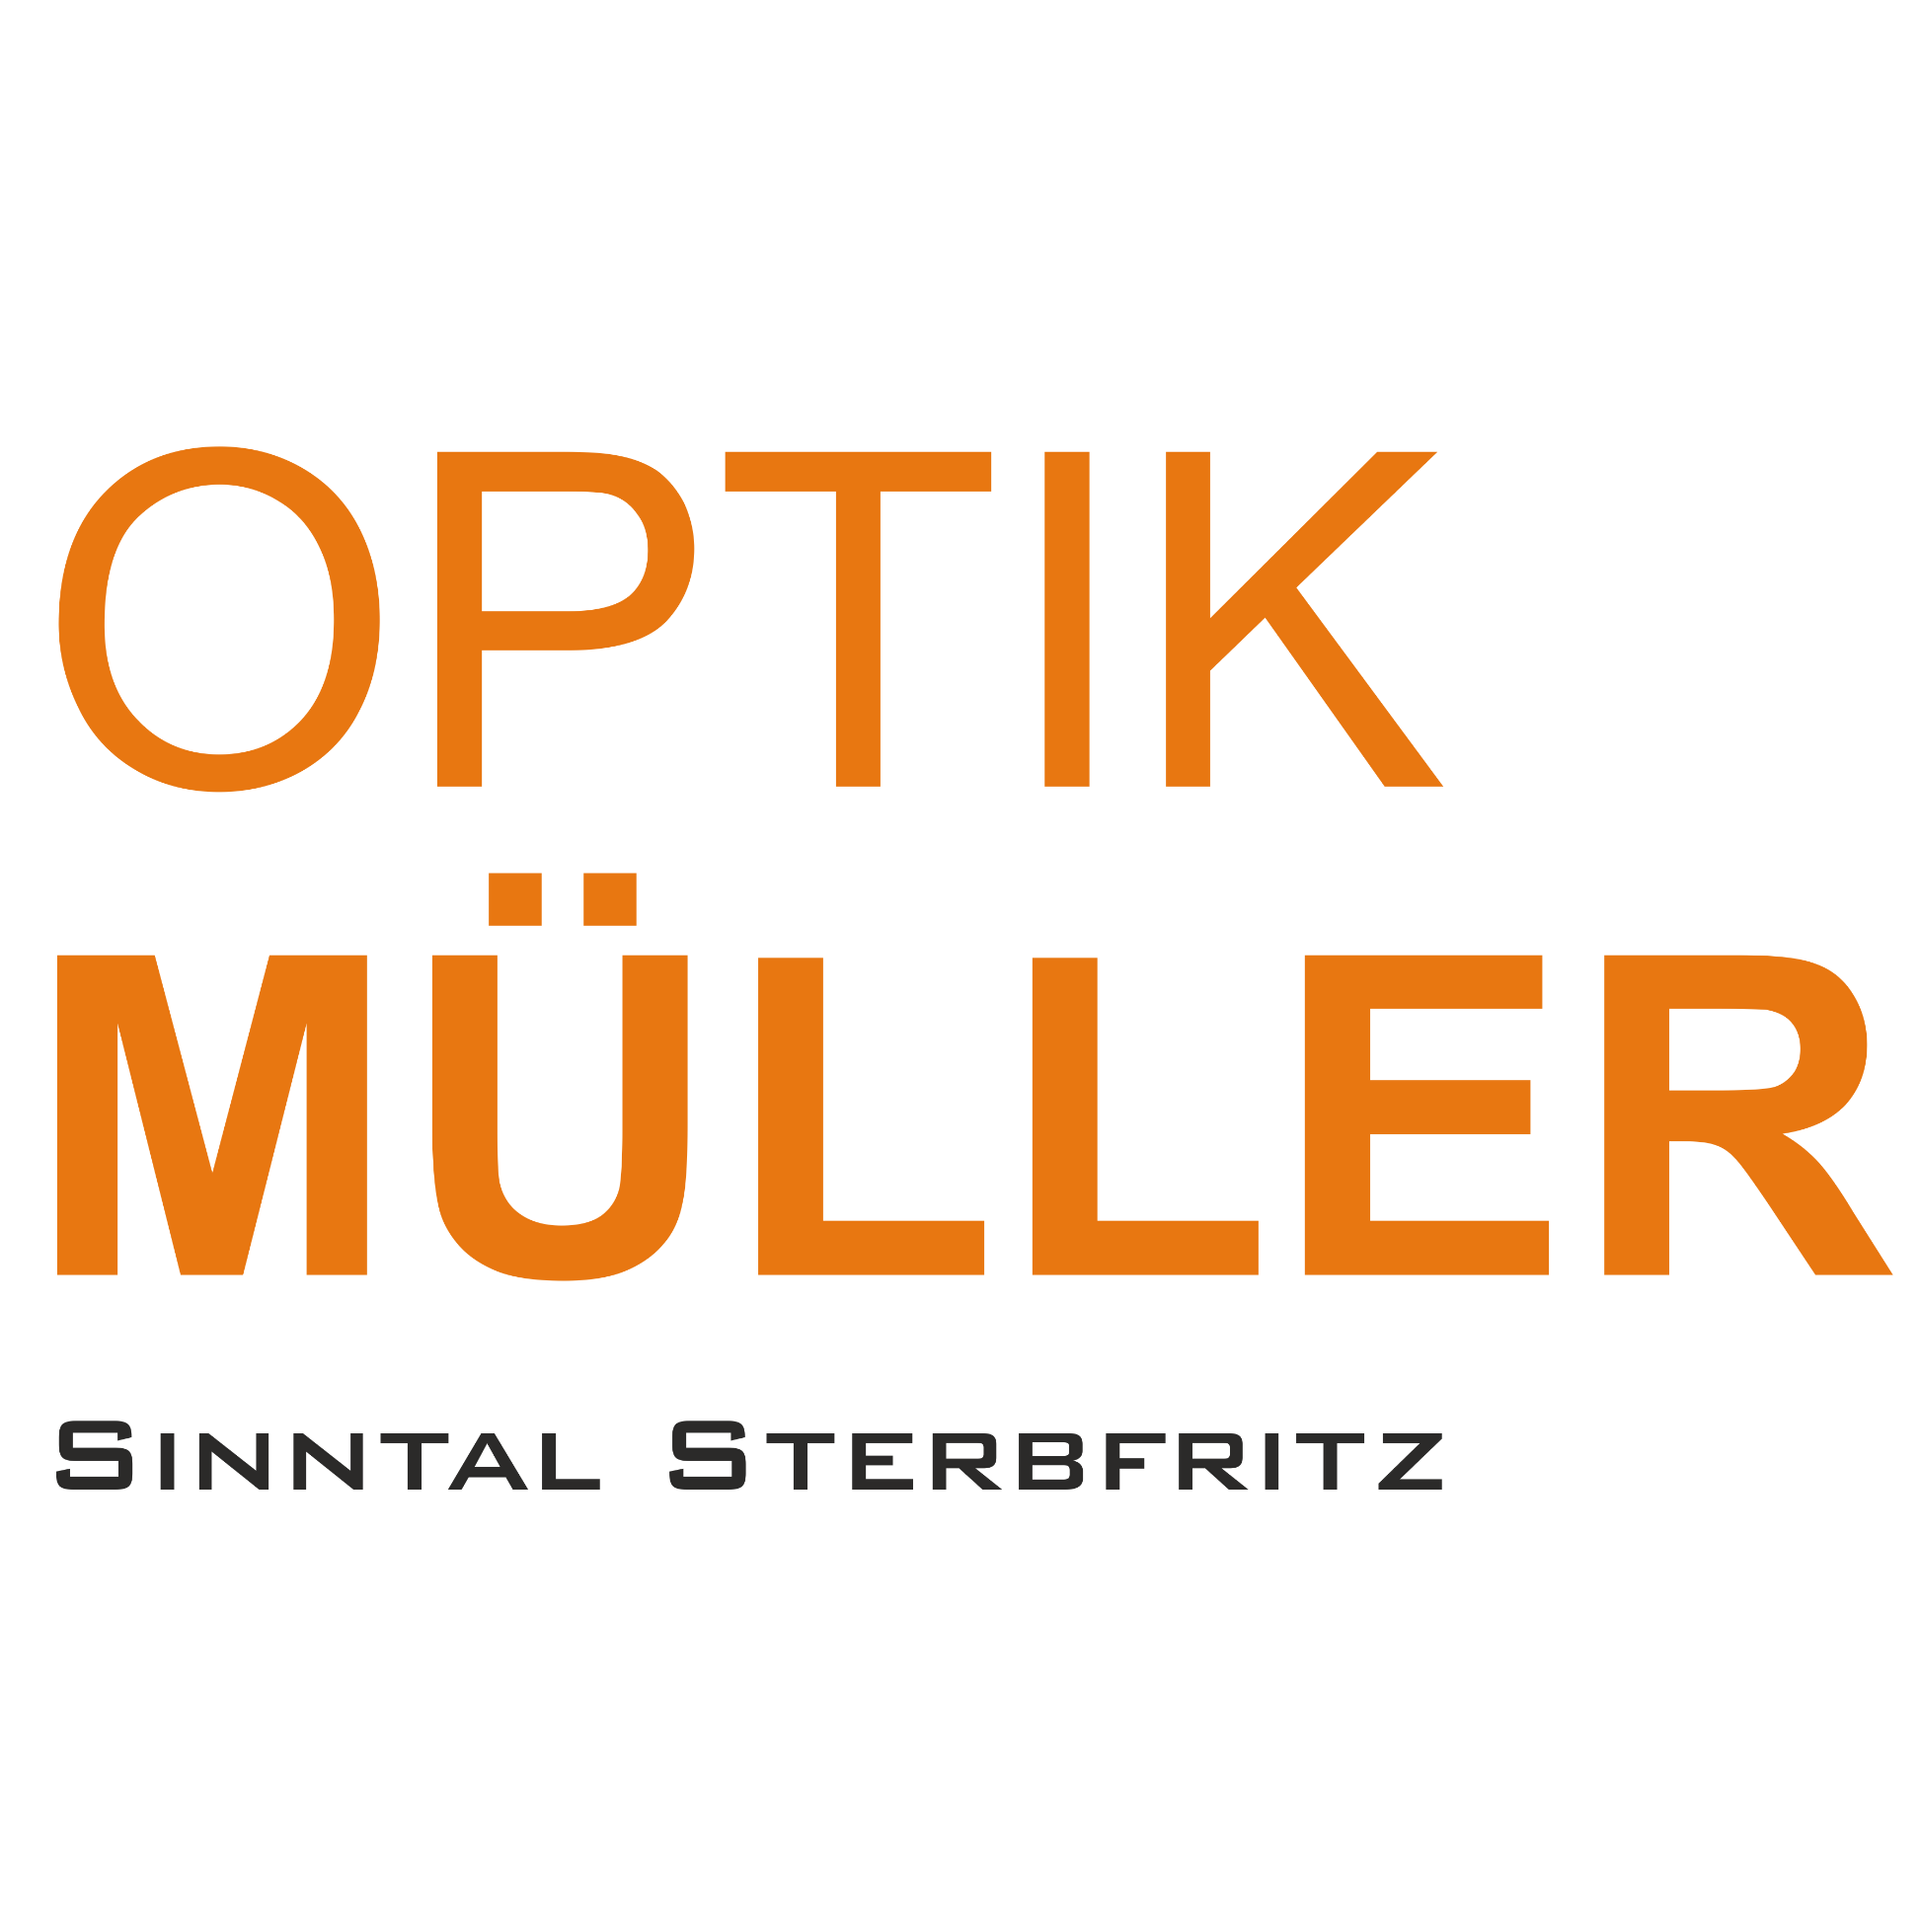 Optik Müller - Ihr Fachgeschäft in Sterbfritz